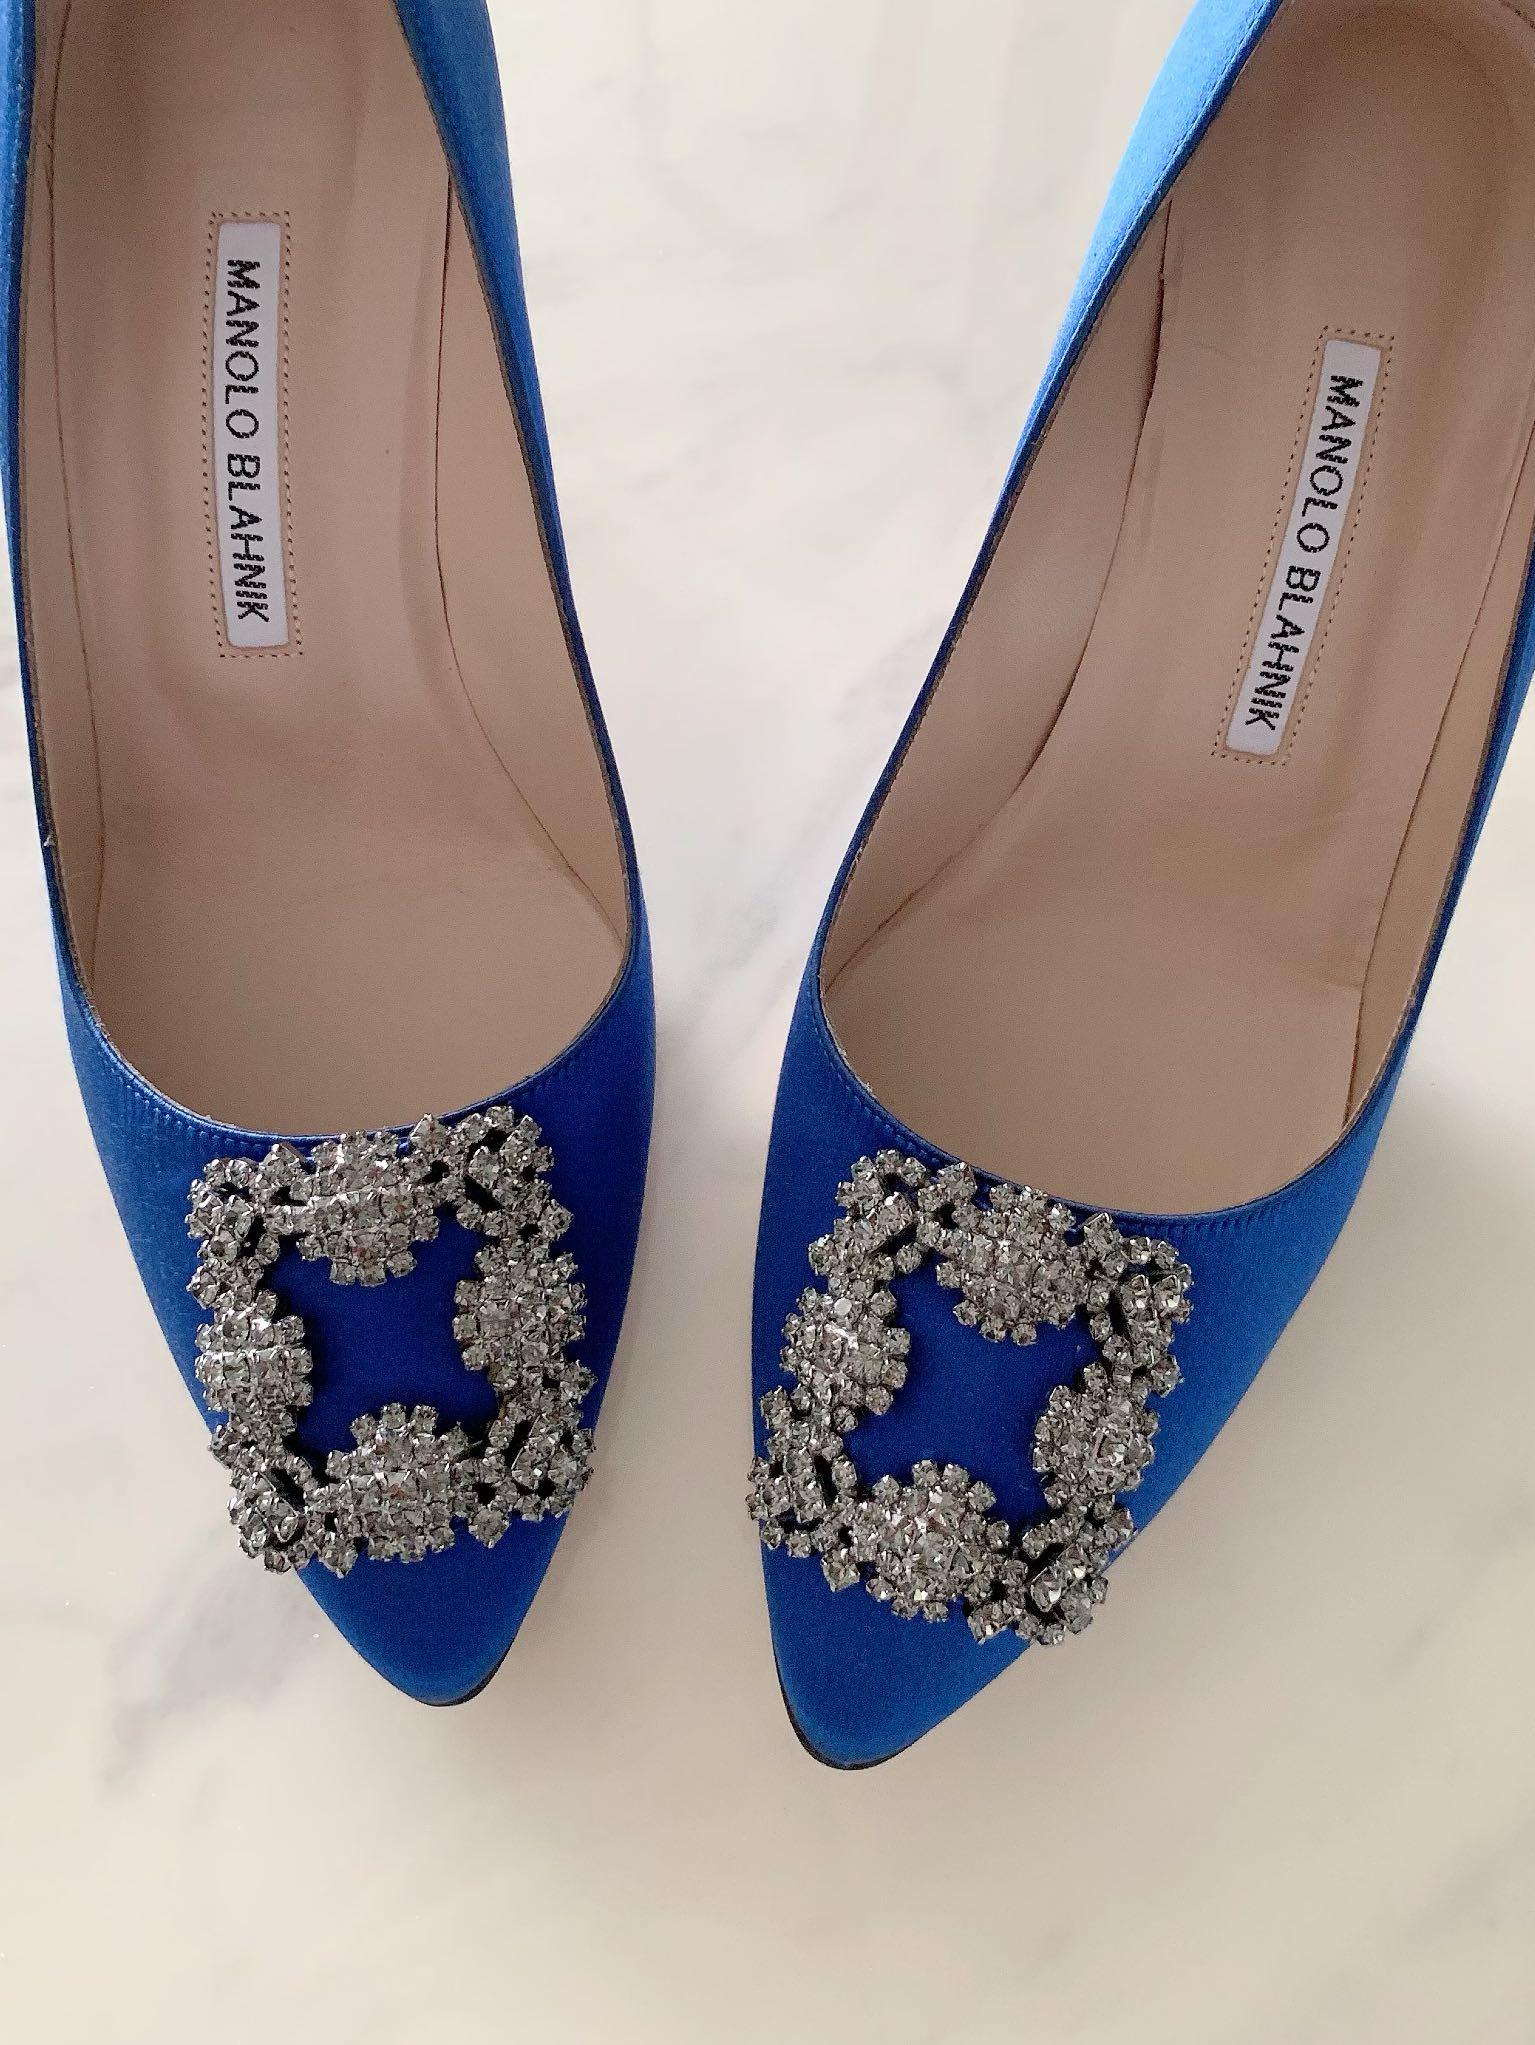 blue manolo heels